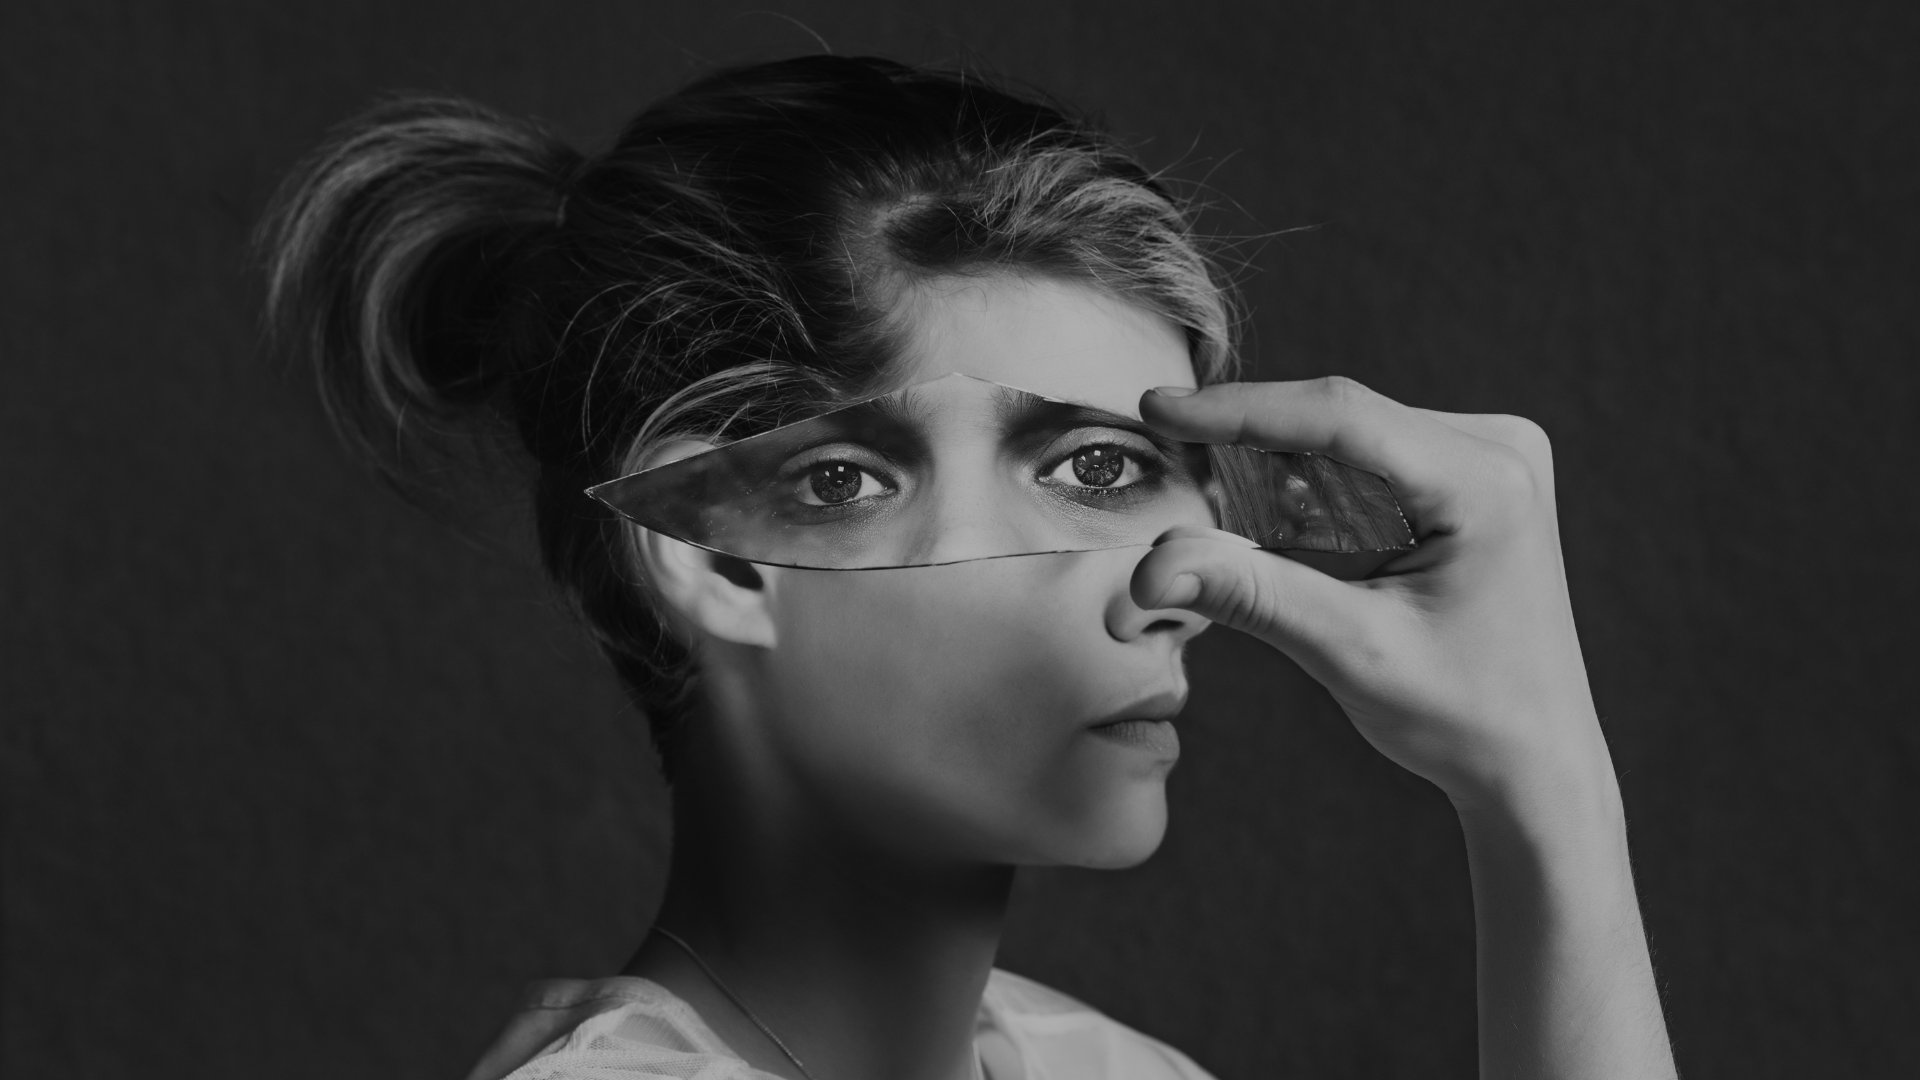 Mulher segurando um pedaço de vidro sobre o rosto, refletindo os olhos